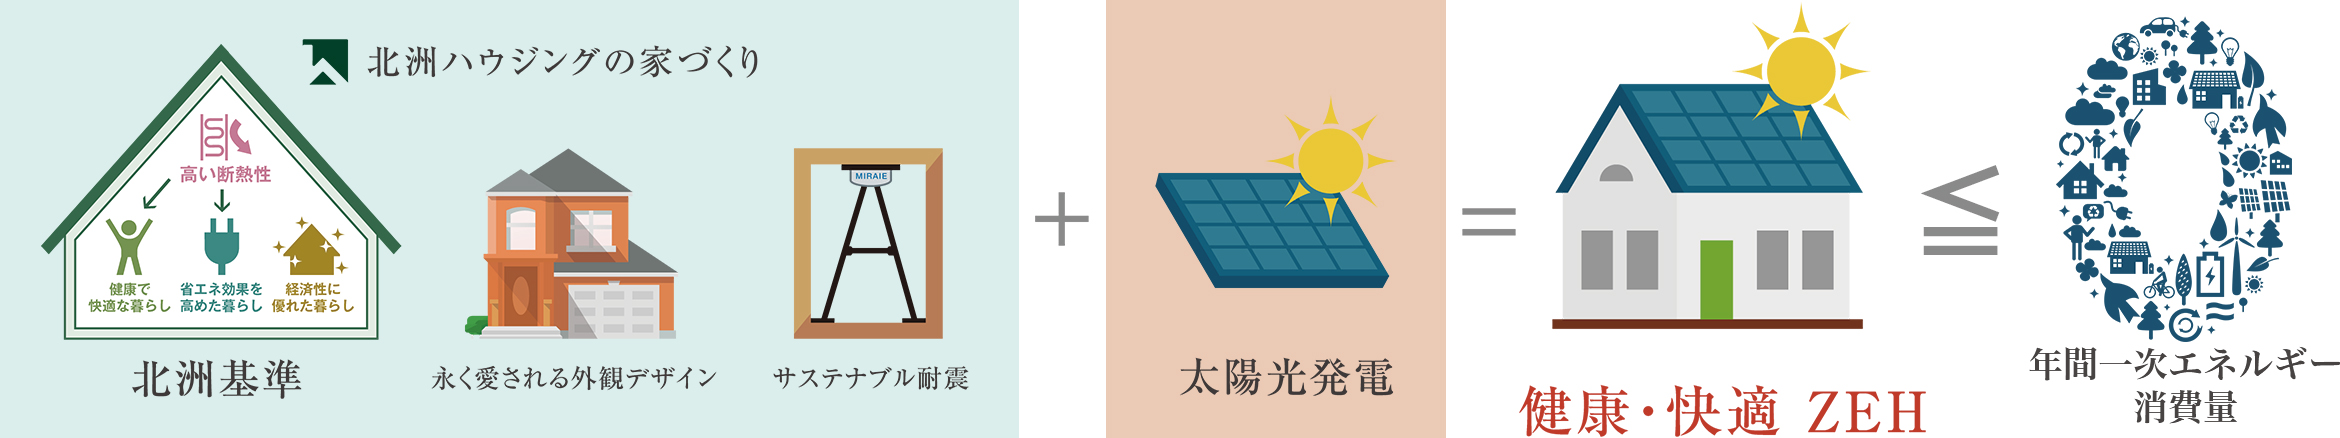 北洲ハウジングの家づくりと太陽光発電で、「健康・快適」＋ZEHを実現。